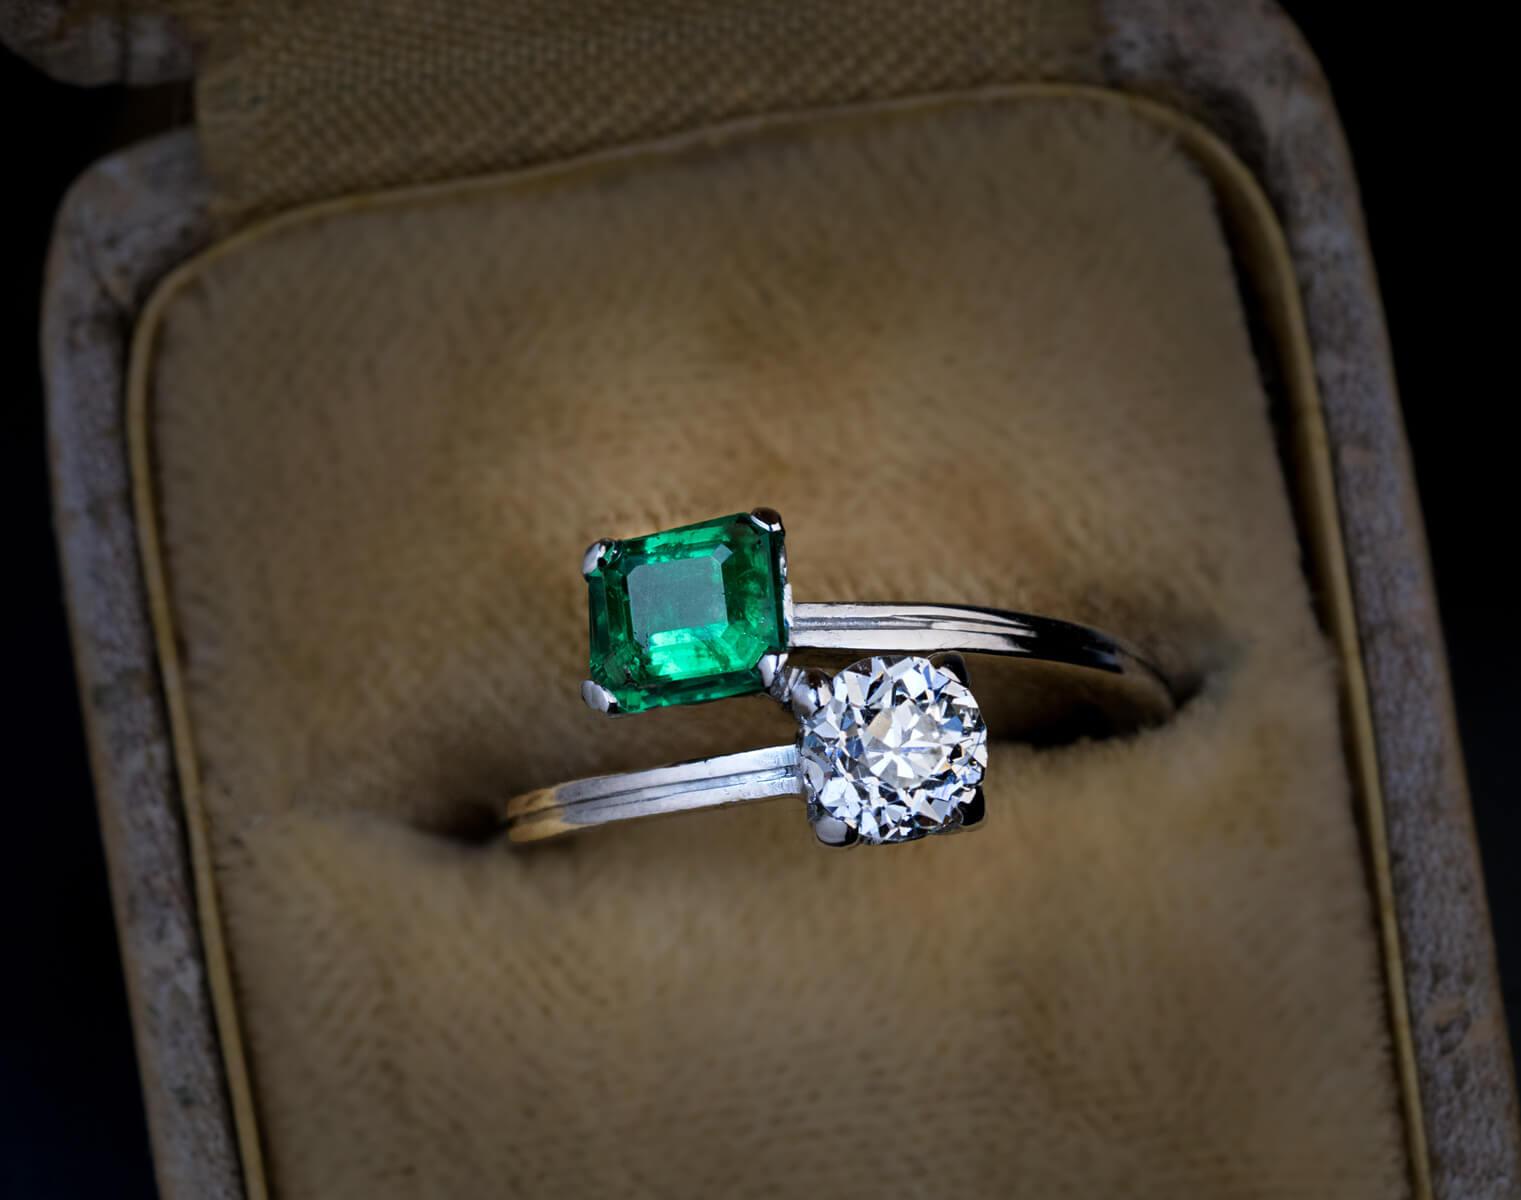 Der Ring aus 14 Karat Weißgold ist mit einem strahlend weißen Diamanten im alten europäischen Schliff (Farbe H, Reinheit VS1) und einem leuchtend blaugrünen kolumbianischen Smaragd besetzt.

Das geschätzte Gewicht des Smaragds beträgt 0,62 ct (5,8 x